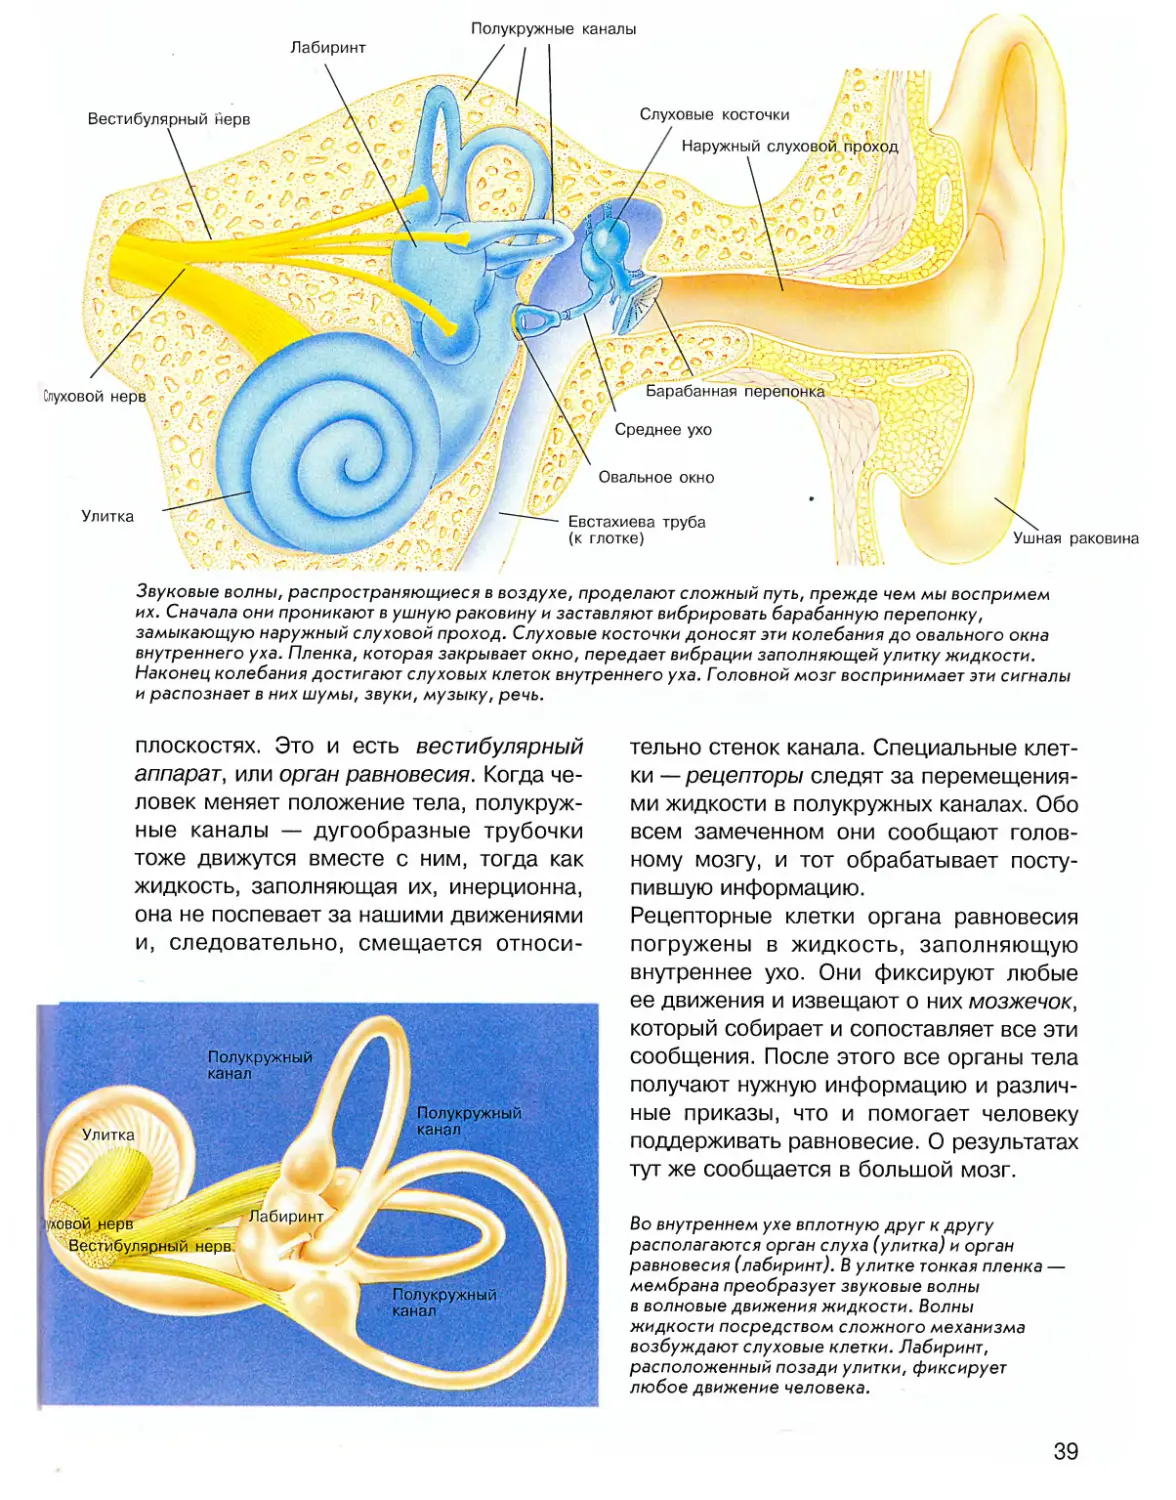 Три полукружных канала в ухе. Вестибулярный аппарат внутреннего уха. Полукружные каналы внутреннего уха. Внутреннее ухо вестибулярный аппарат. Внутреннее ухо улитка косточки.